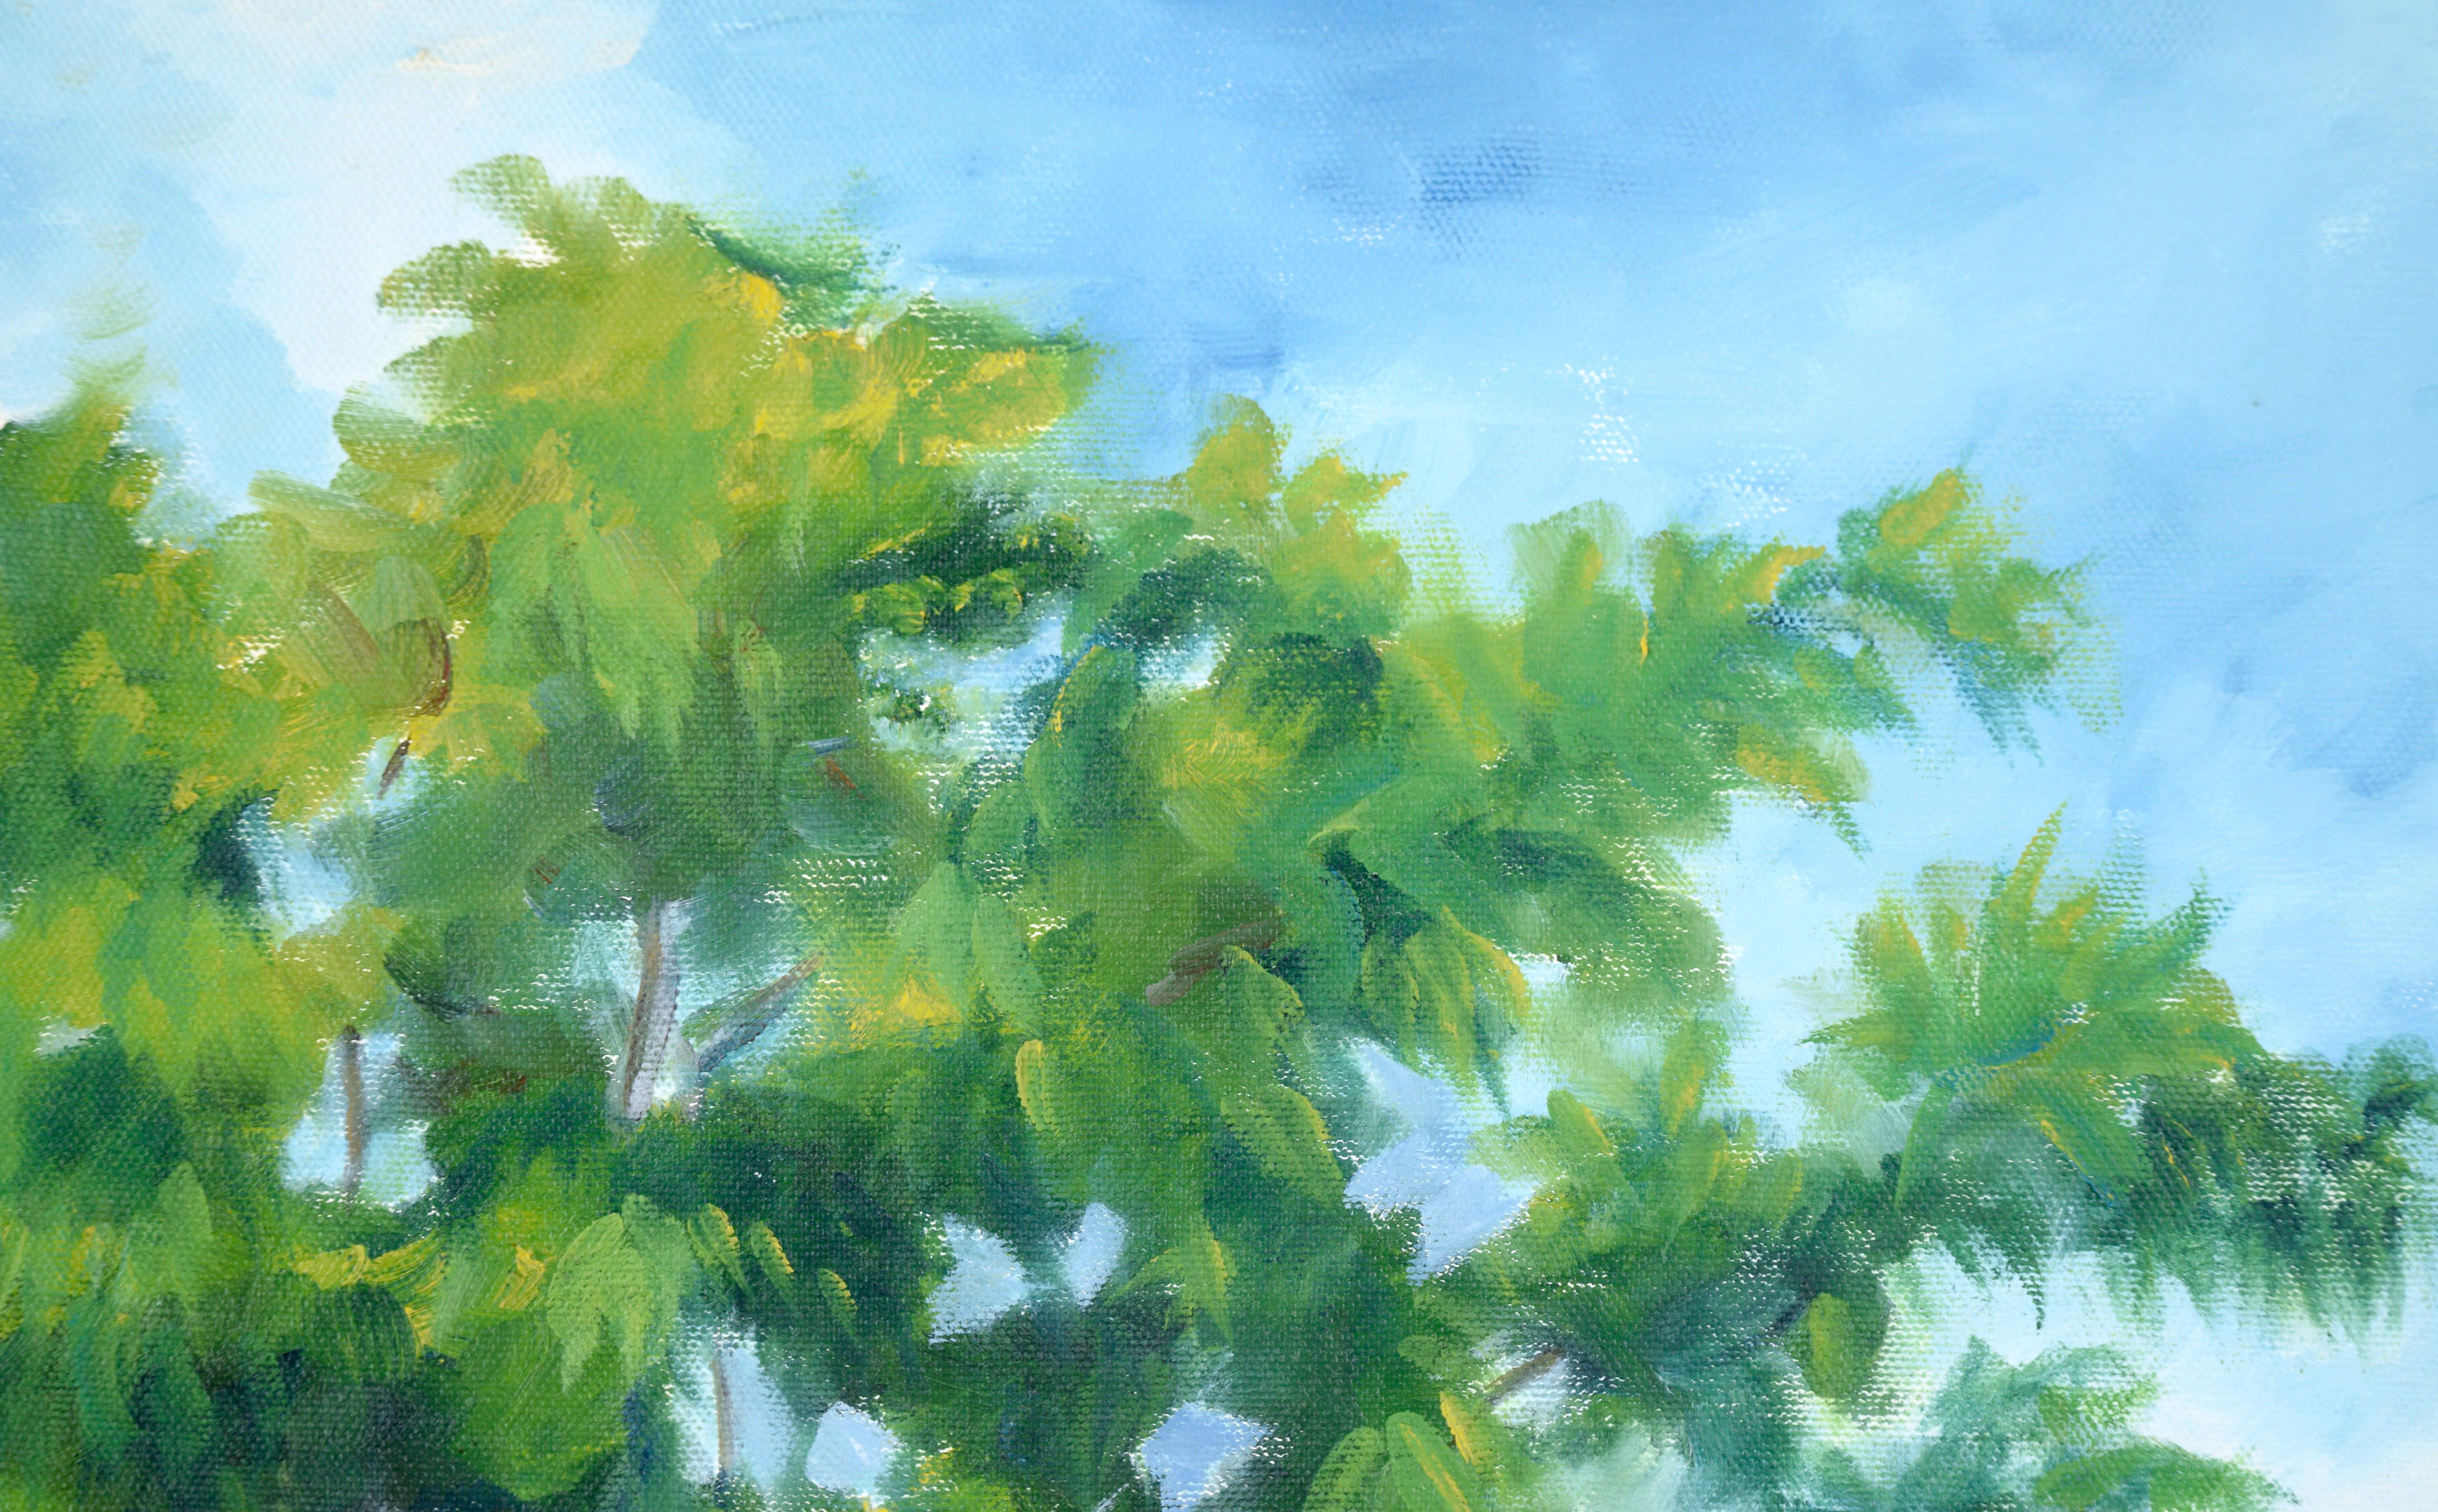 Walking the Path Under the Trees - Paysage en acrylique sur toile - Impressionnisme Painting par Unknown